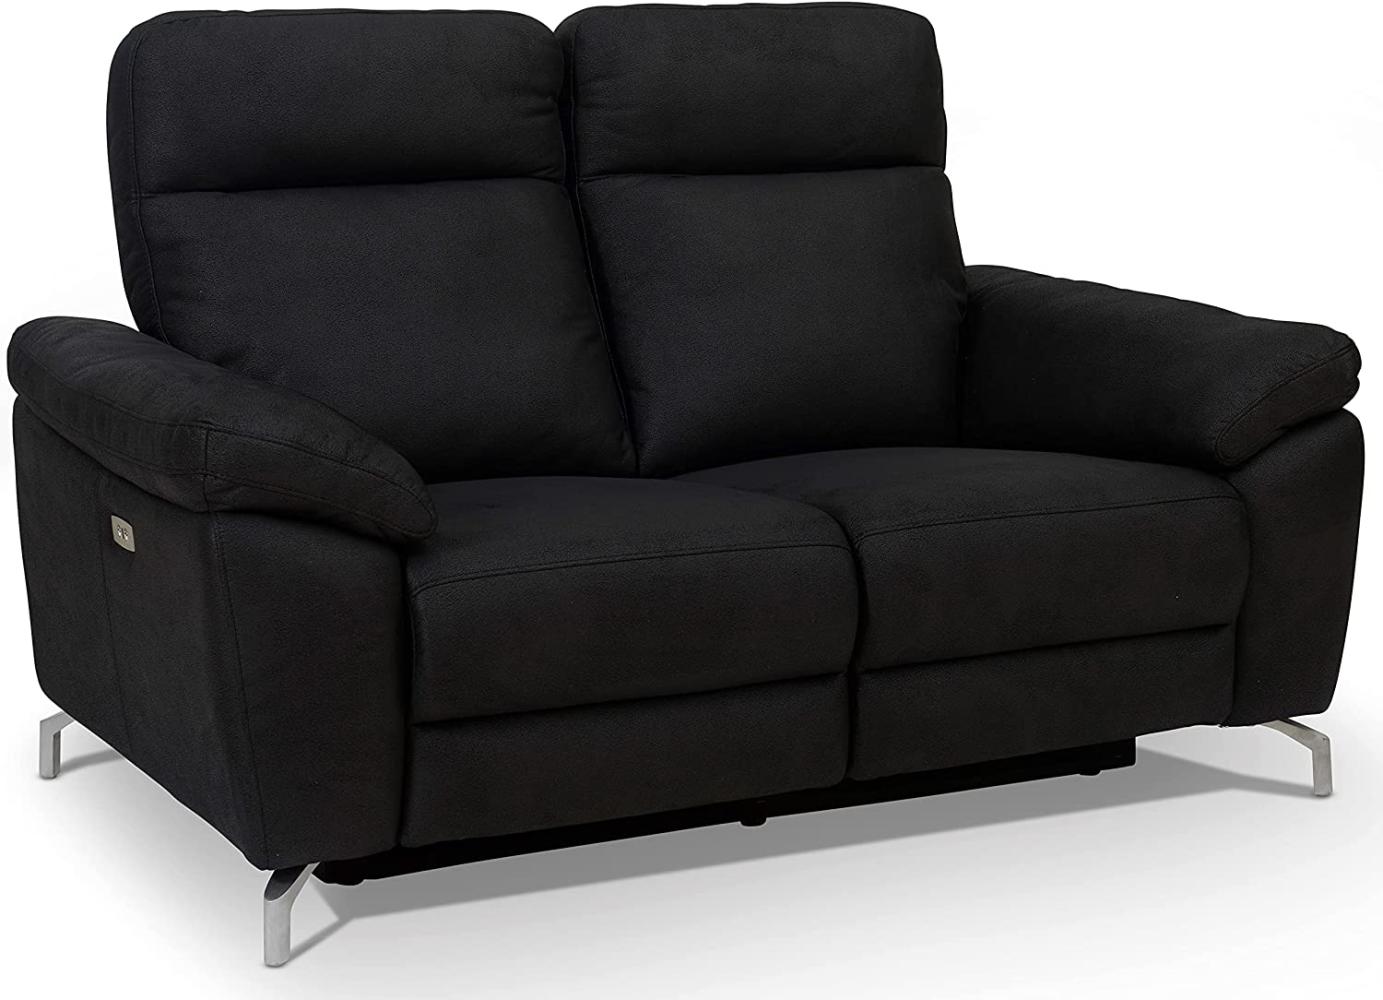 Ibbe Design Schwarz Stoff 2er Sitzer Relaxsofa Couch mit Elektrisch Verstellbar Relaxfunktion Heimkino Sofa Doha mit Fussteil, Federkern, 162x96x101 cm Bild 1